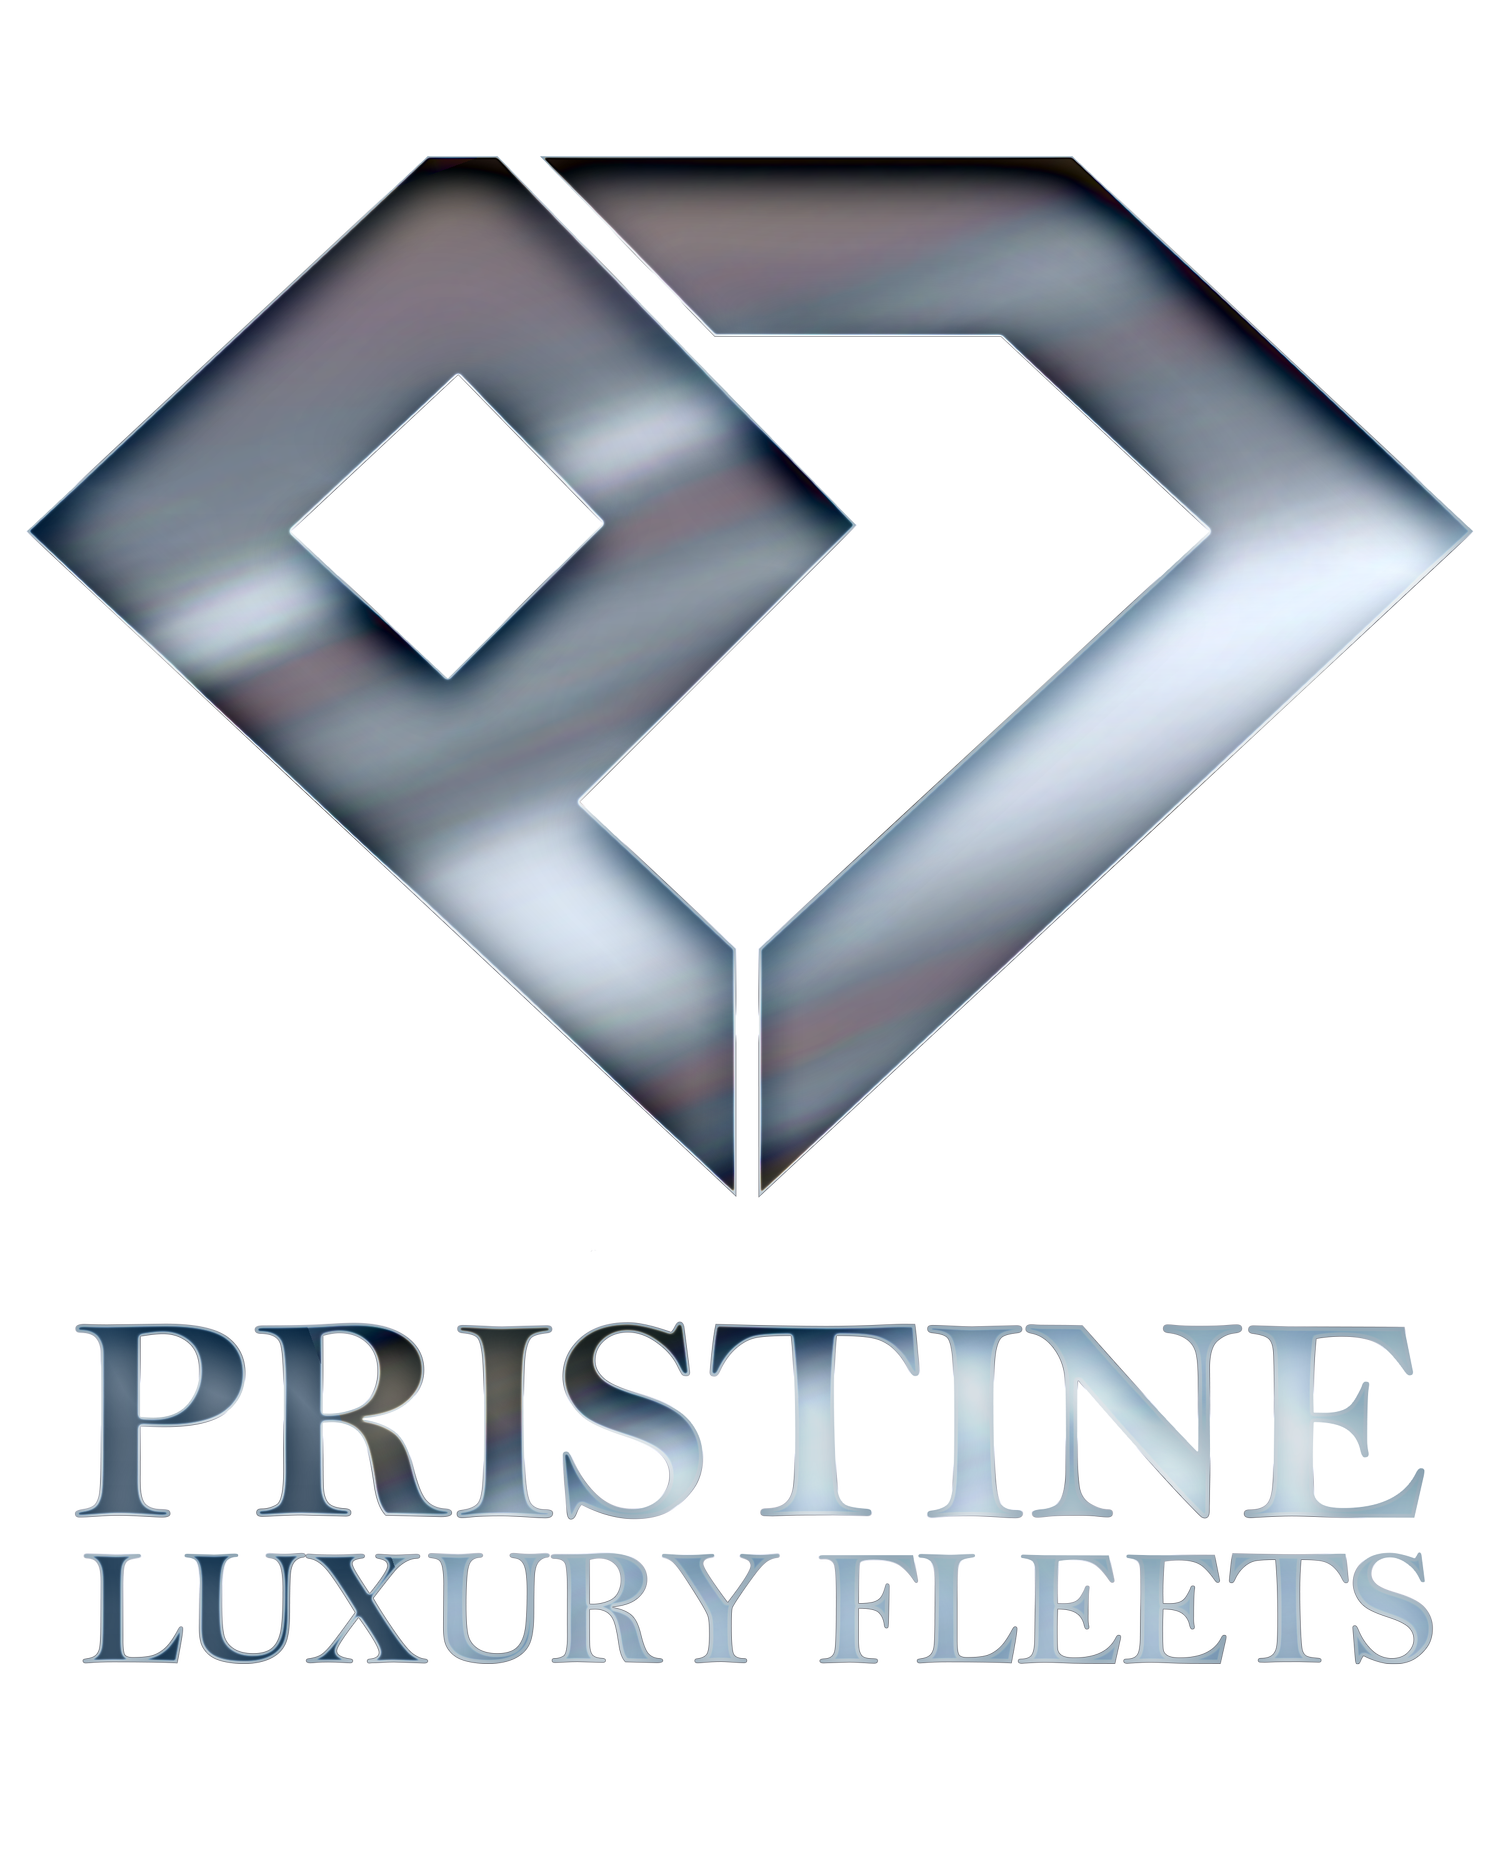 Pristine Luxury Fleets